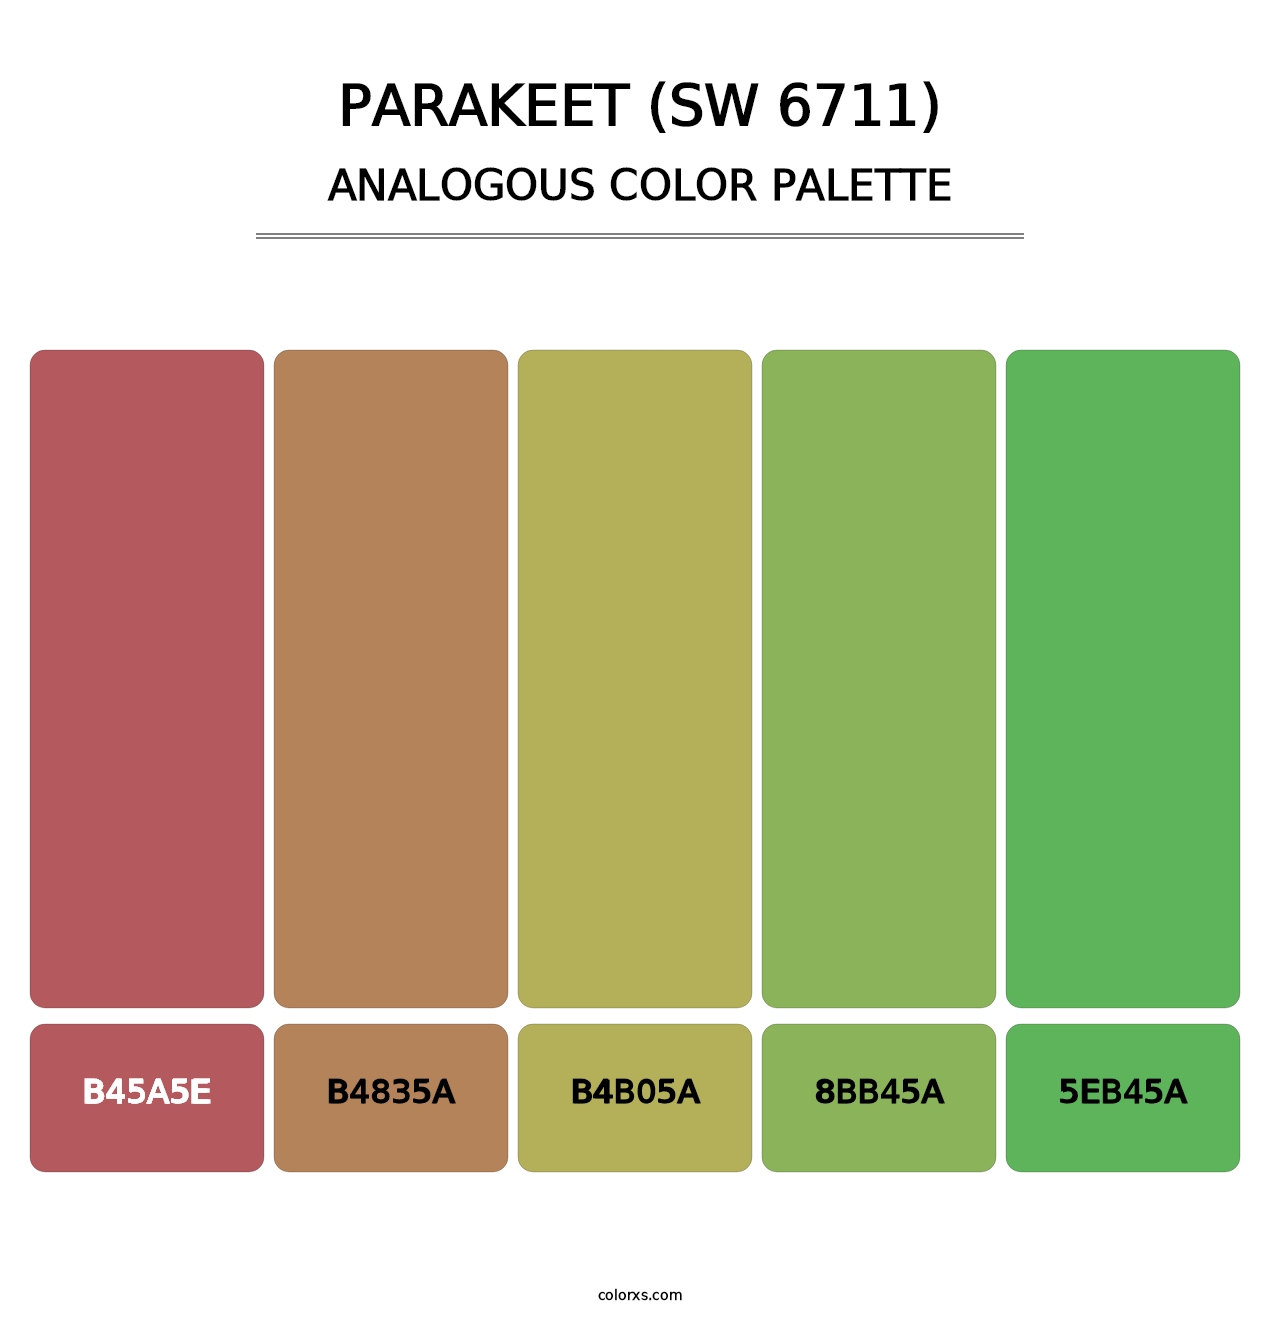 Parakeet (SW 6711) - Analogous Color Palette